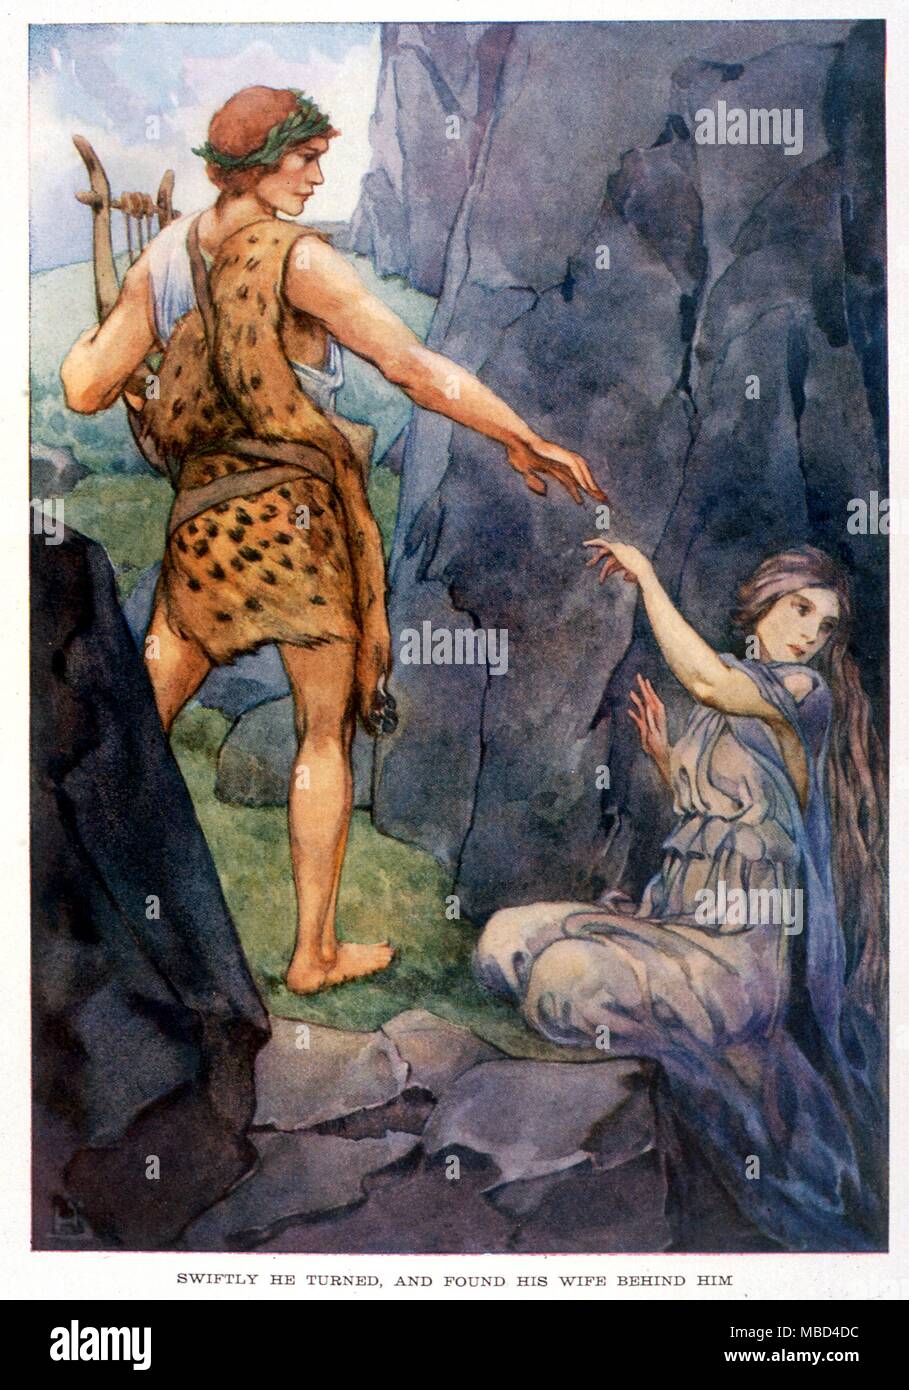 La mythologie grecque - Orphée et Eurydice. Orphée Eurydice menant hors de l'enfer se tourne vers l'arrière. Illustration par Helen Stratton, 1915, pour 'un livre de mythes' Banque D'Images